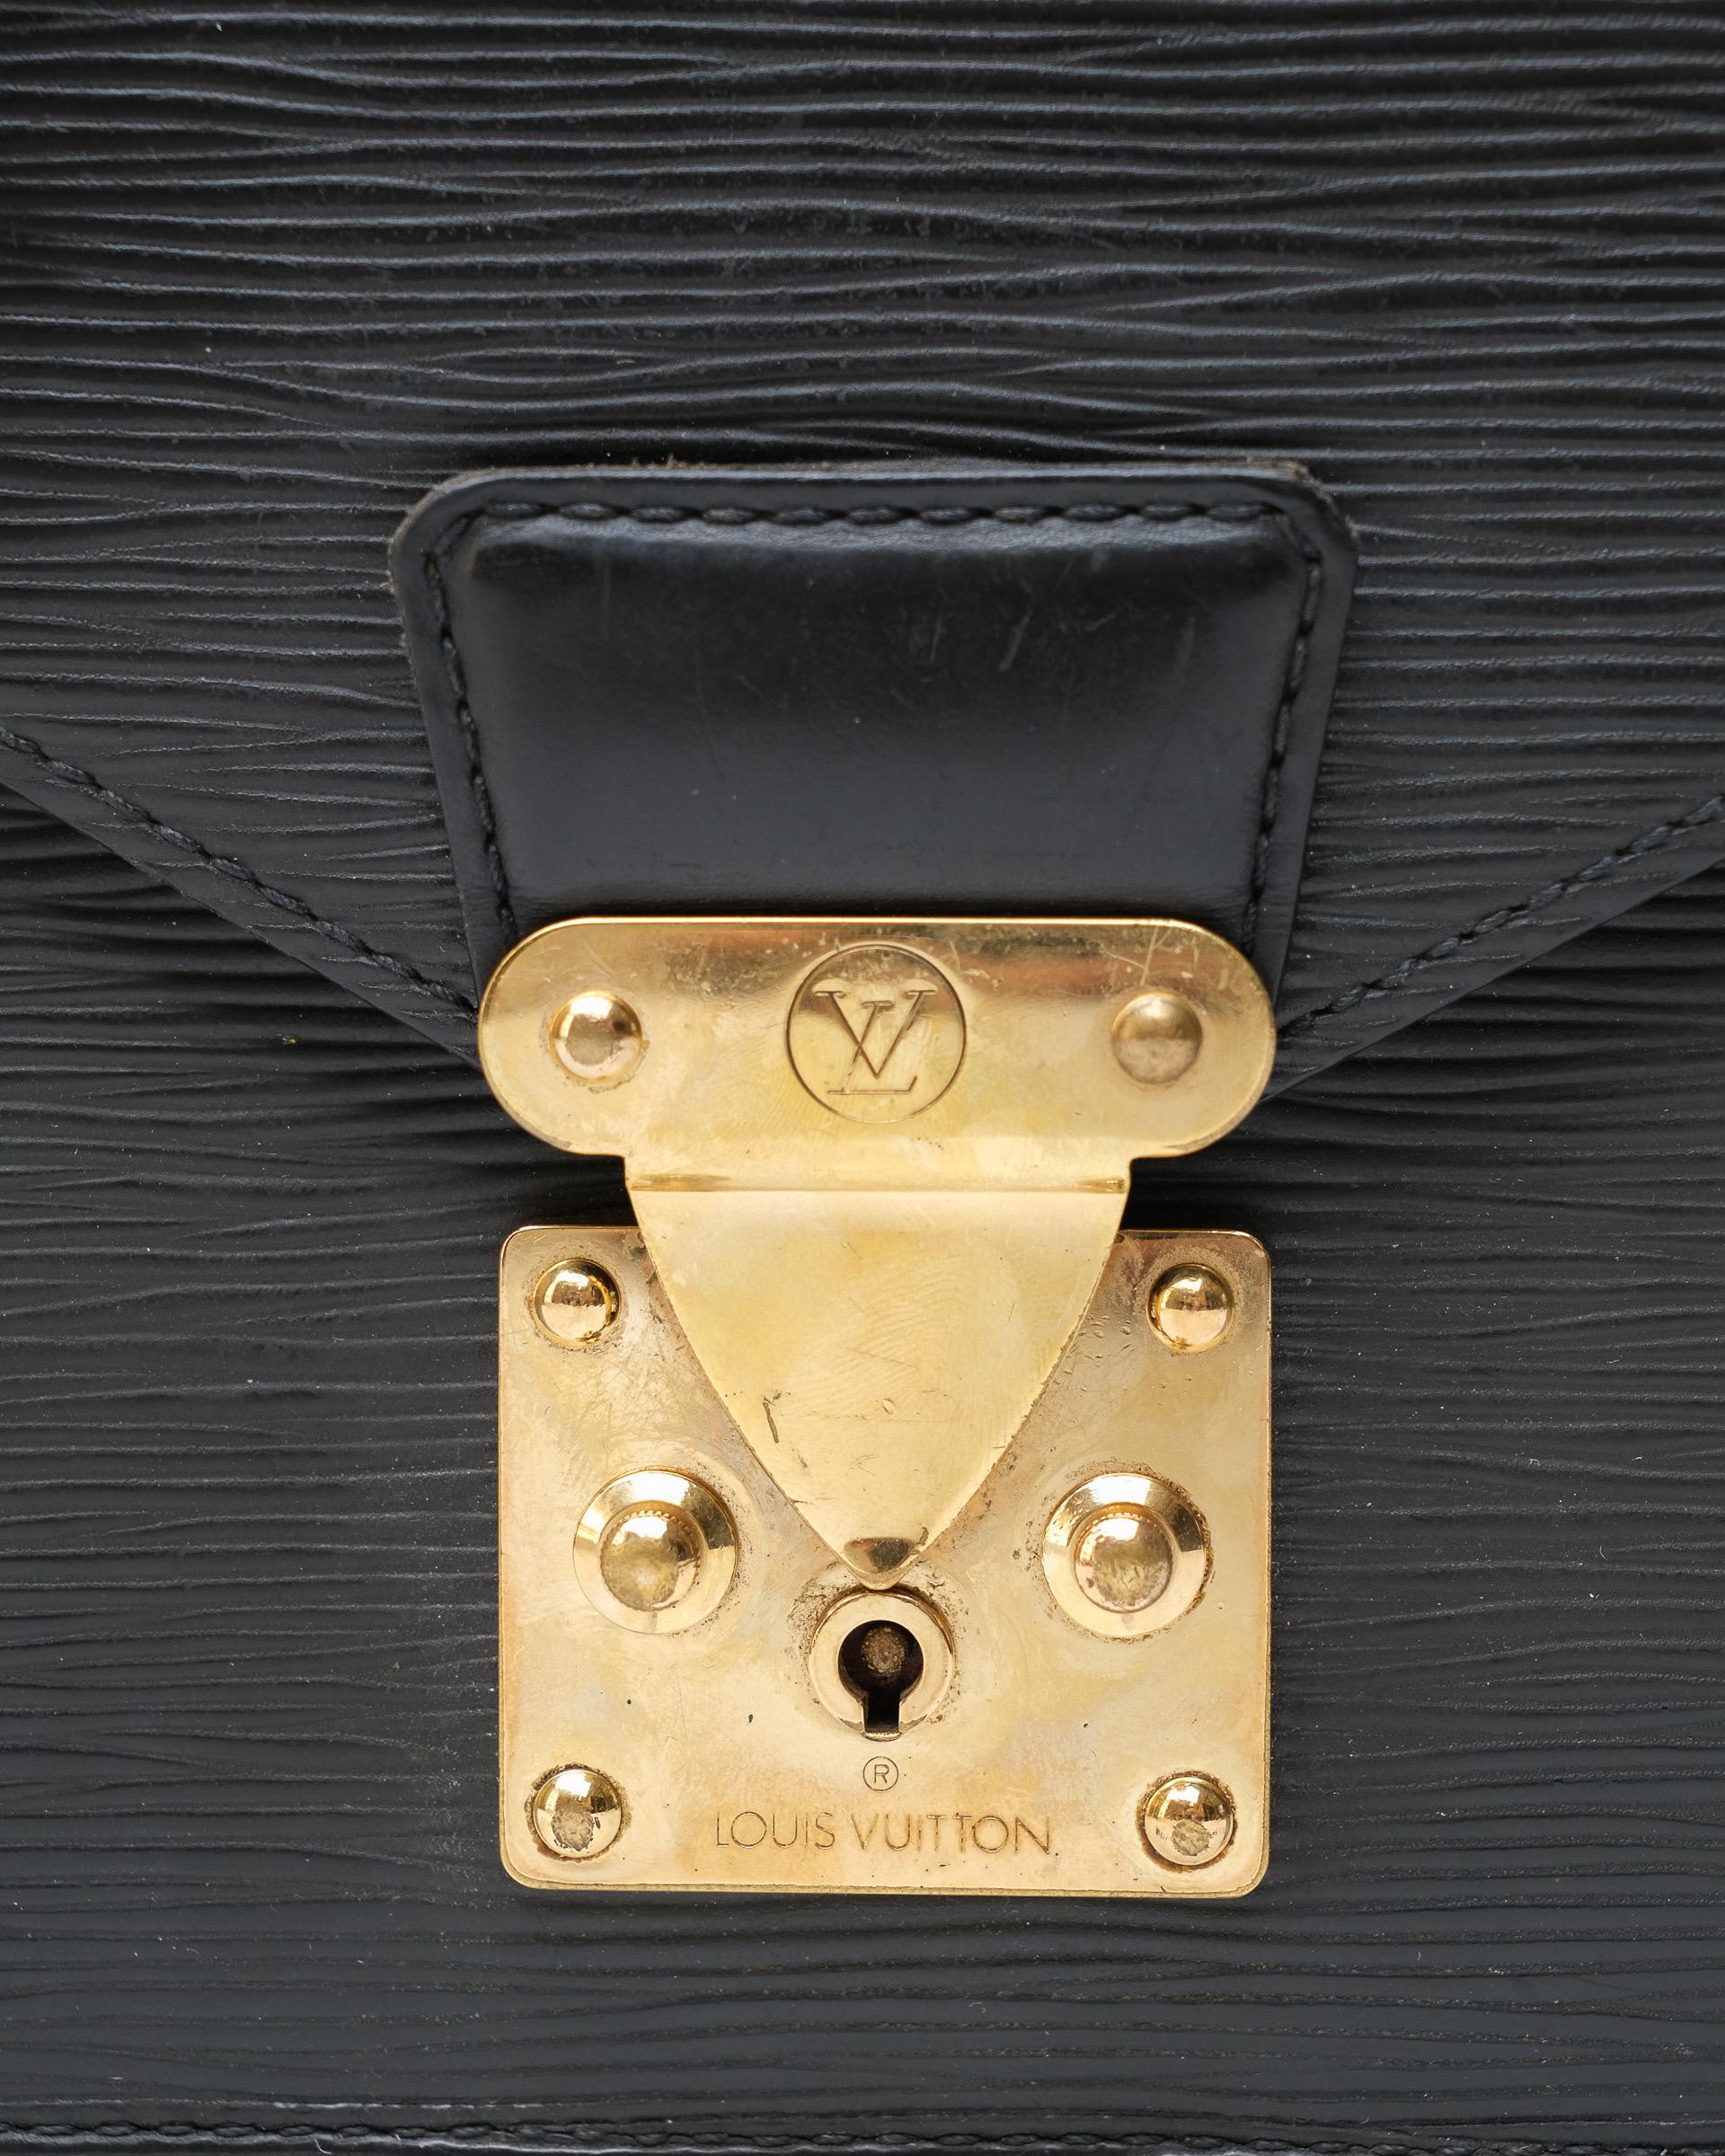 Clutch der Firma Louis Vuitton, Modell Dragonne, Größe PM, hergestellt in Pelle epi nera con hardware dorati. Ausgestattet mit einem Innenfutter, das Ton in Ton mit der Haut vernäht ist und für das Wesentliche ausreicht. Polnische Munita non